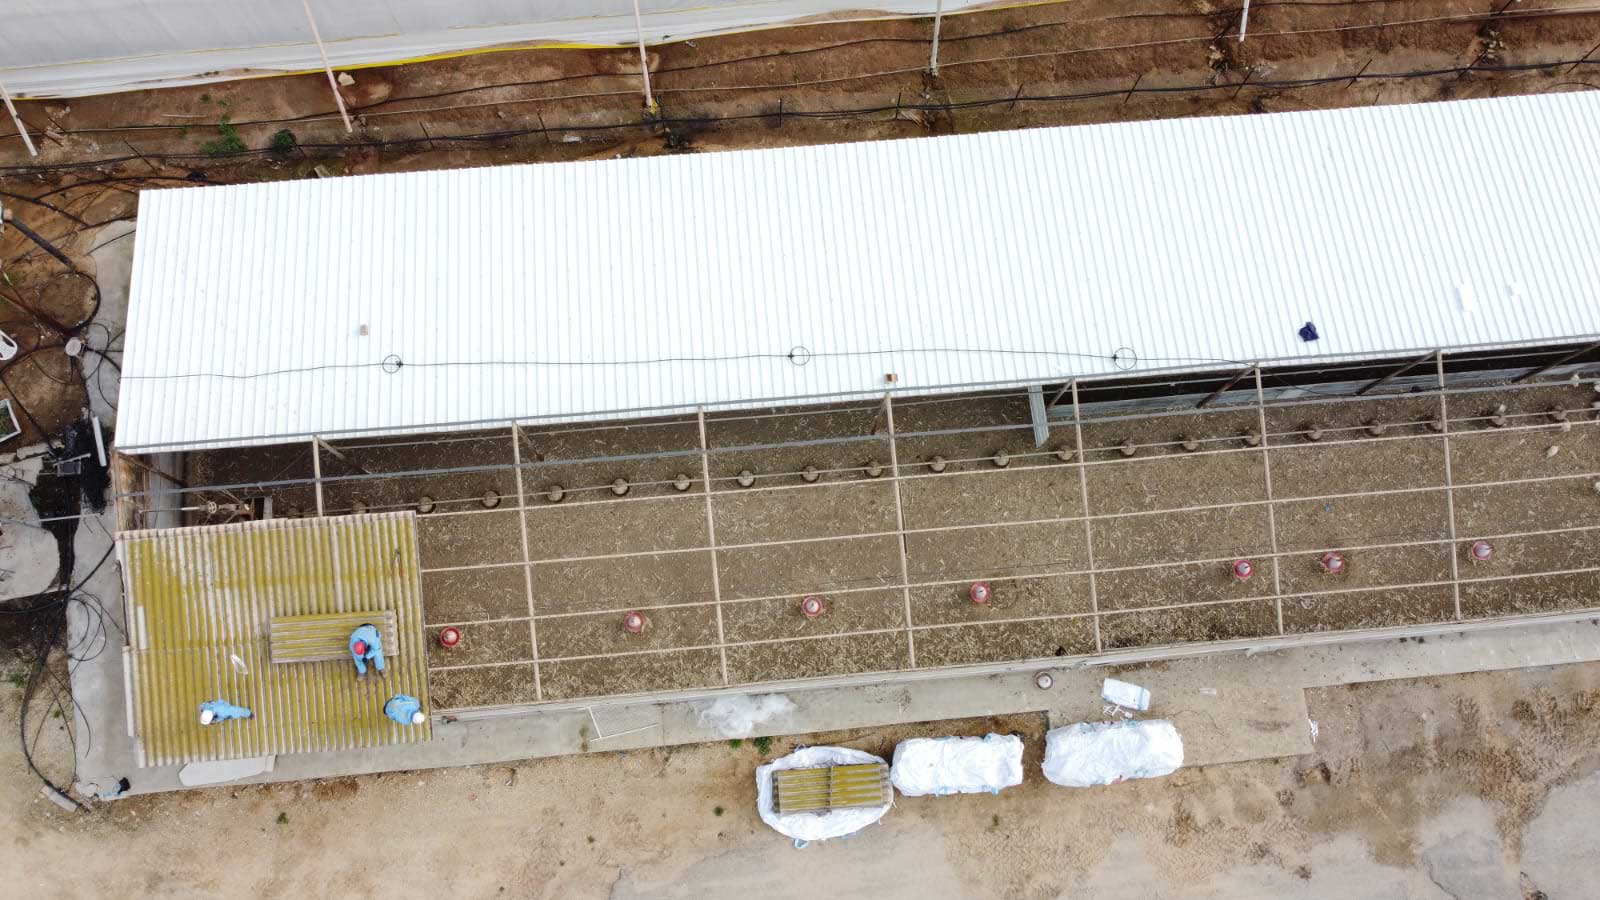 מושב חצב החלפת גגות אסבסט לפאנל מבודד בלולים 4,000 מ"ר   - שיתוף פעולה עם חברה סולארית